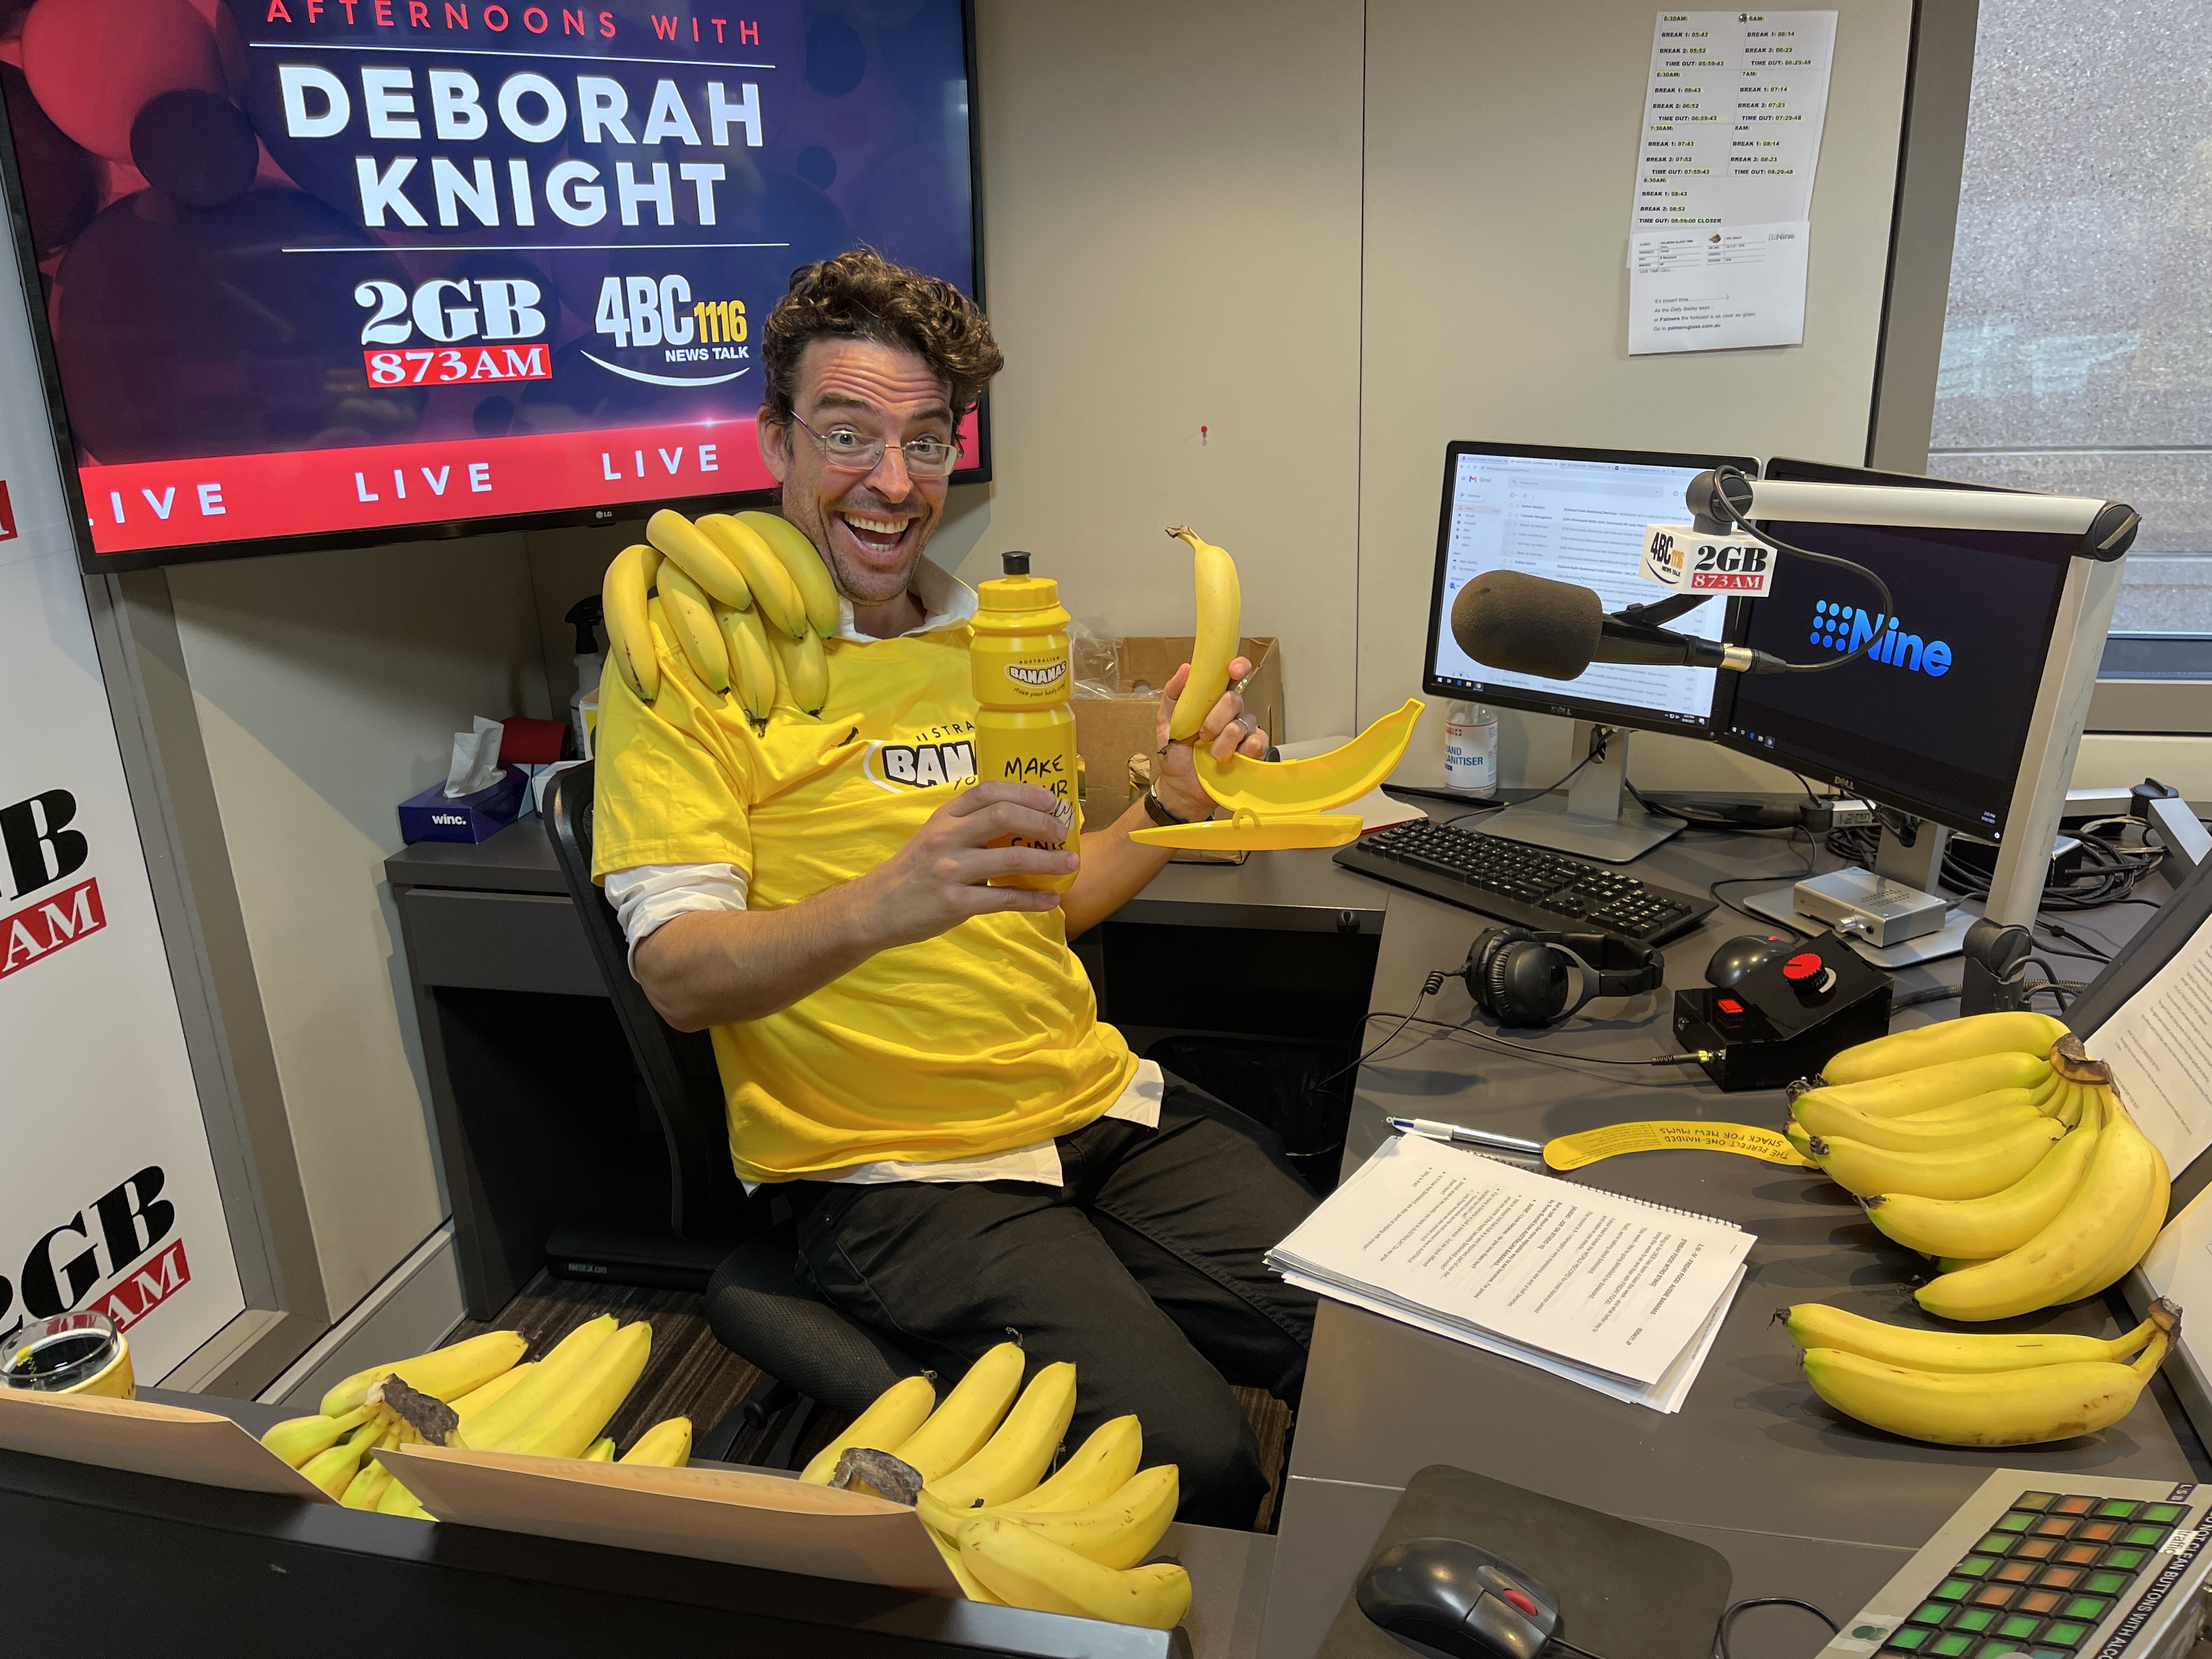 Joe Hildebrand goes bananas for bananas